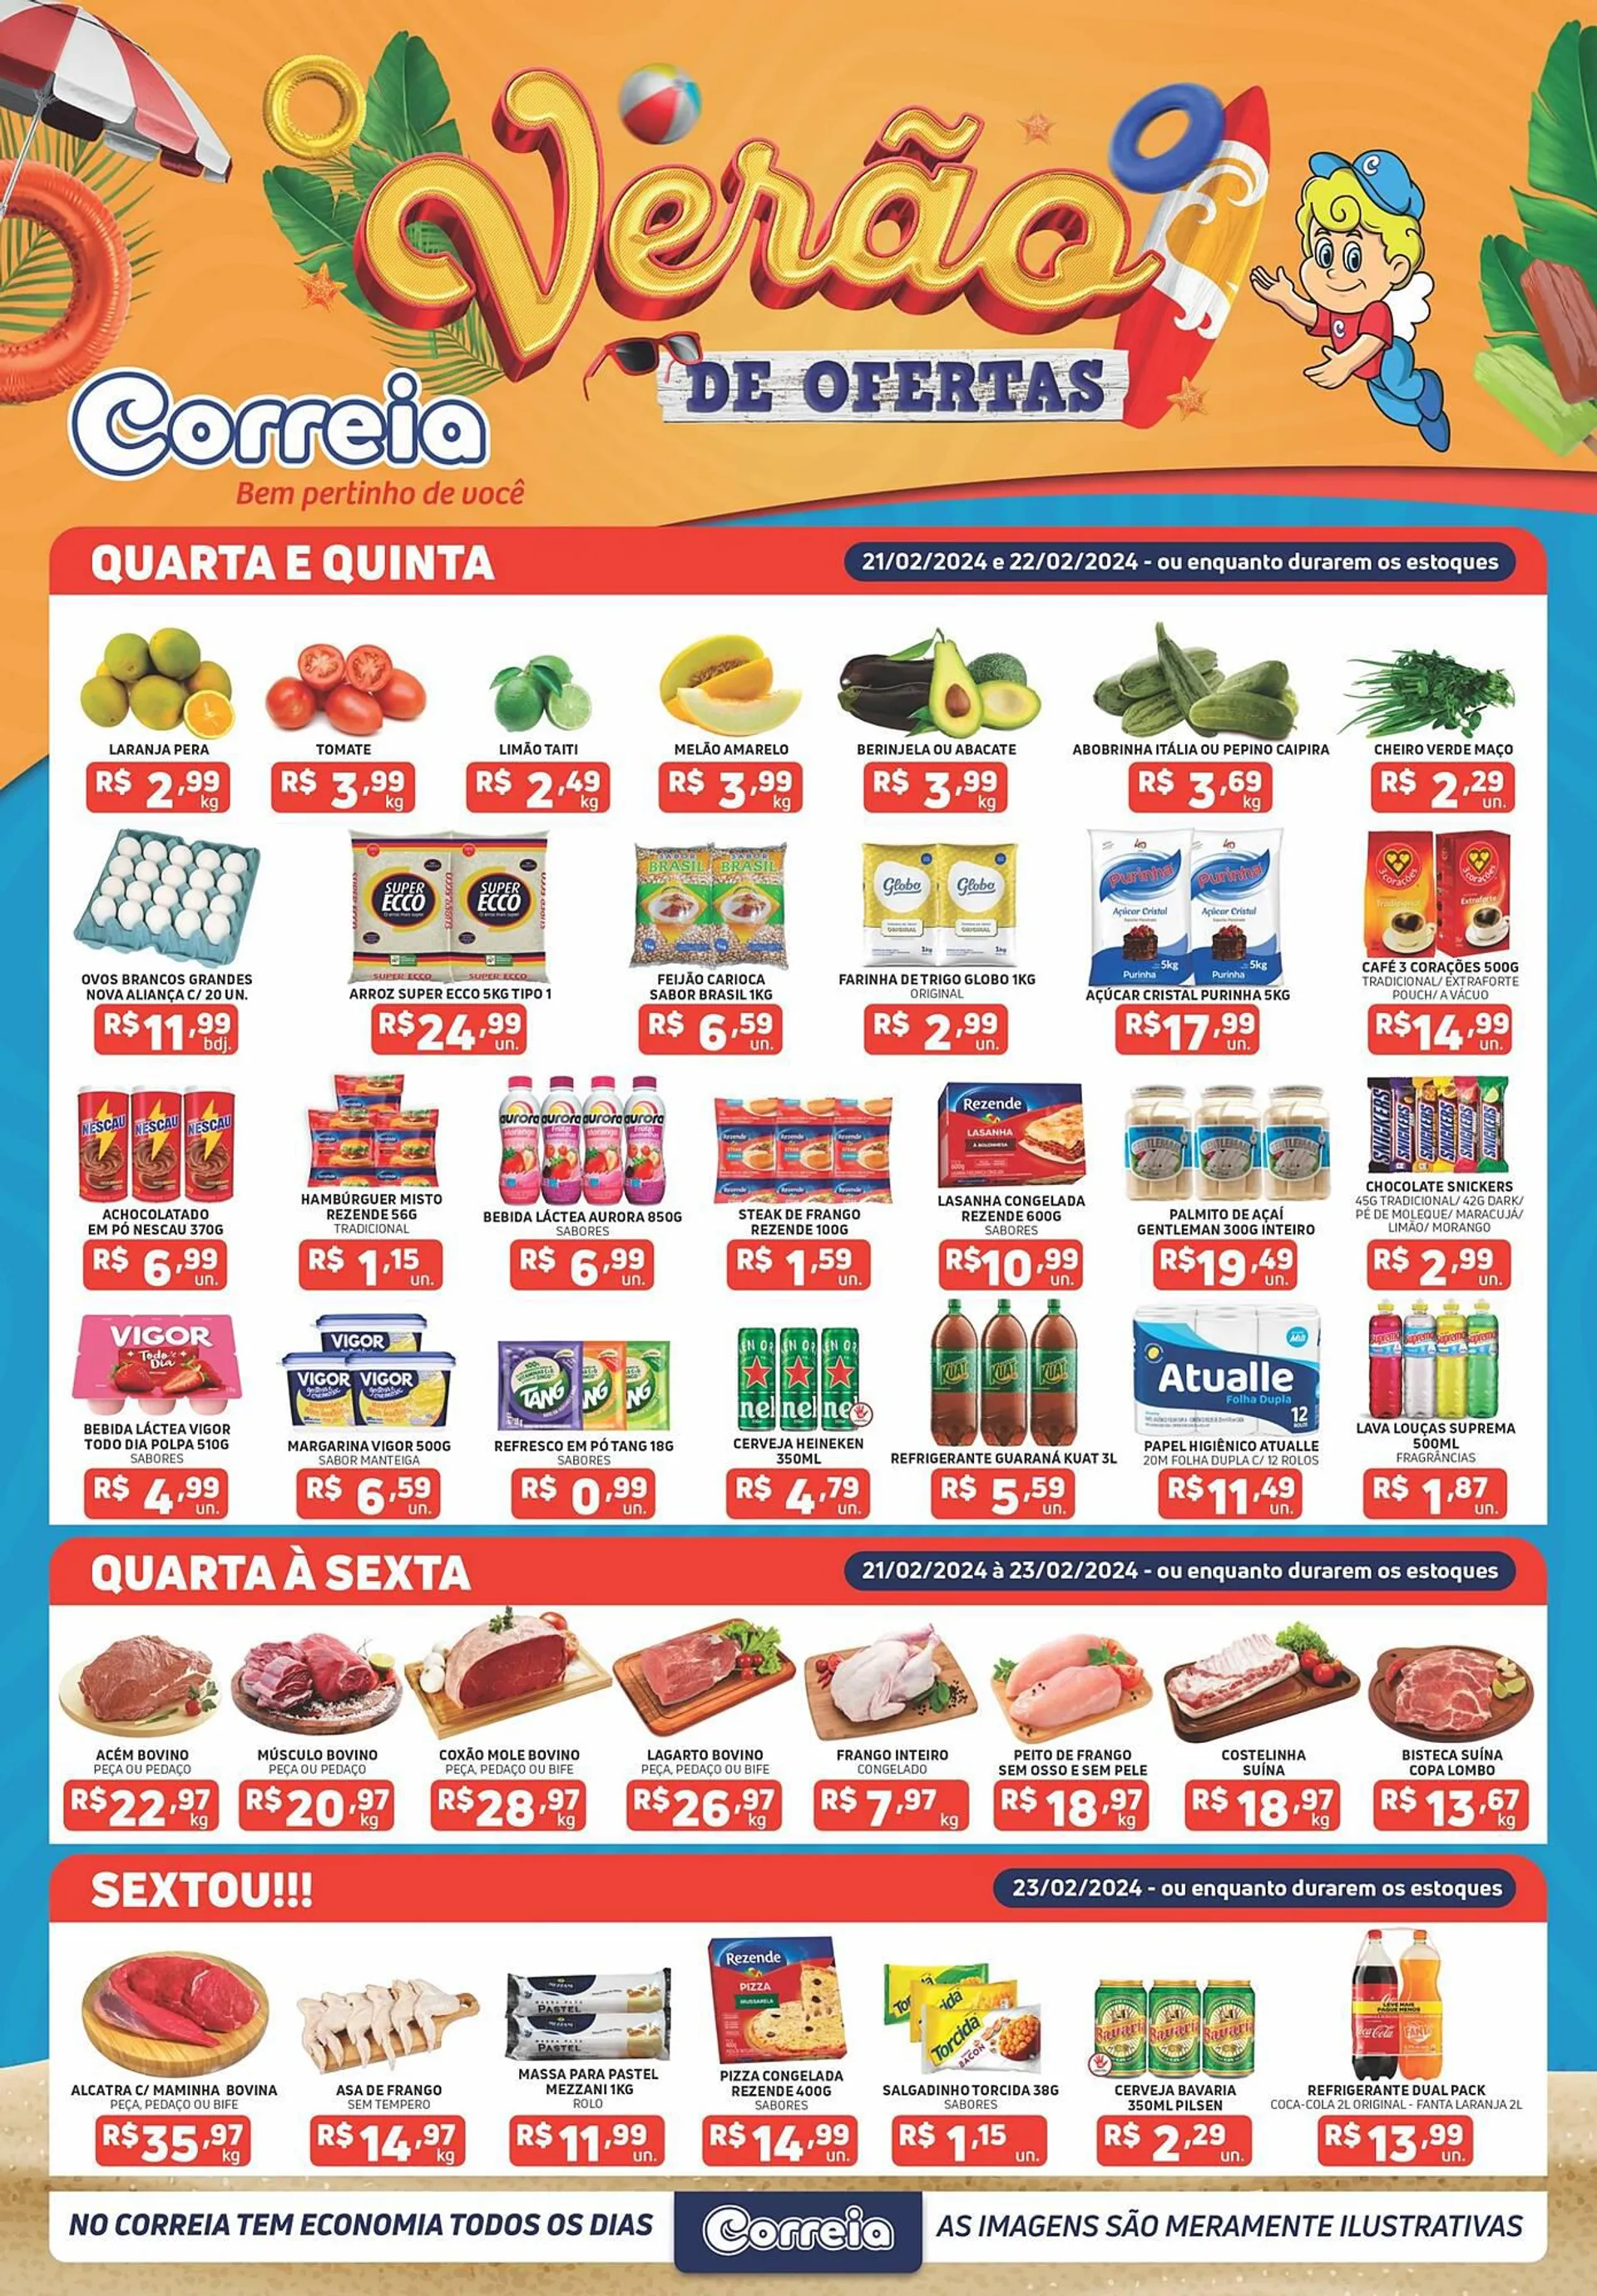 Encarte de Catálogo Supermercados Correia 20 de fevereiro até 23 de fevereiro 2024 - Pagina 